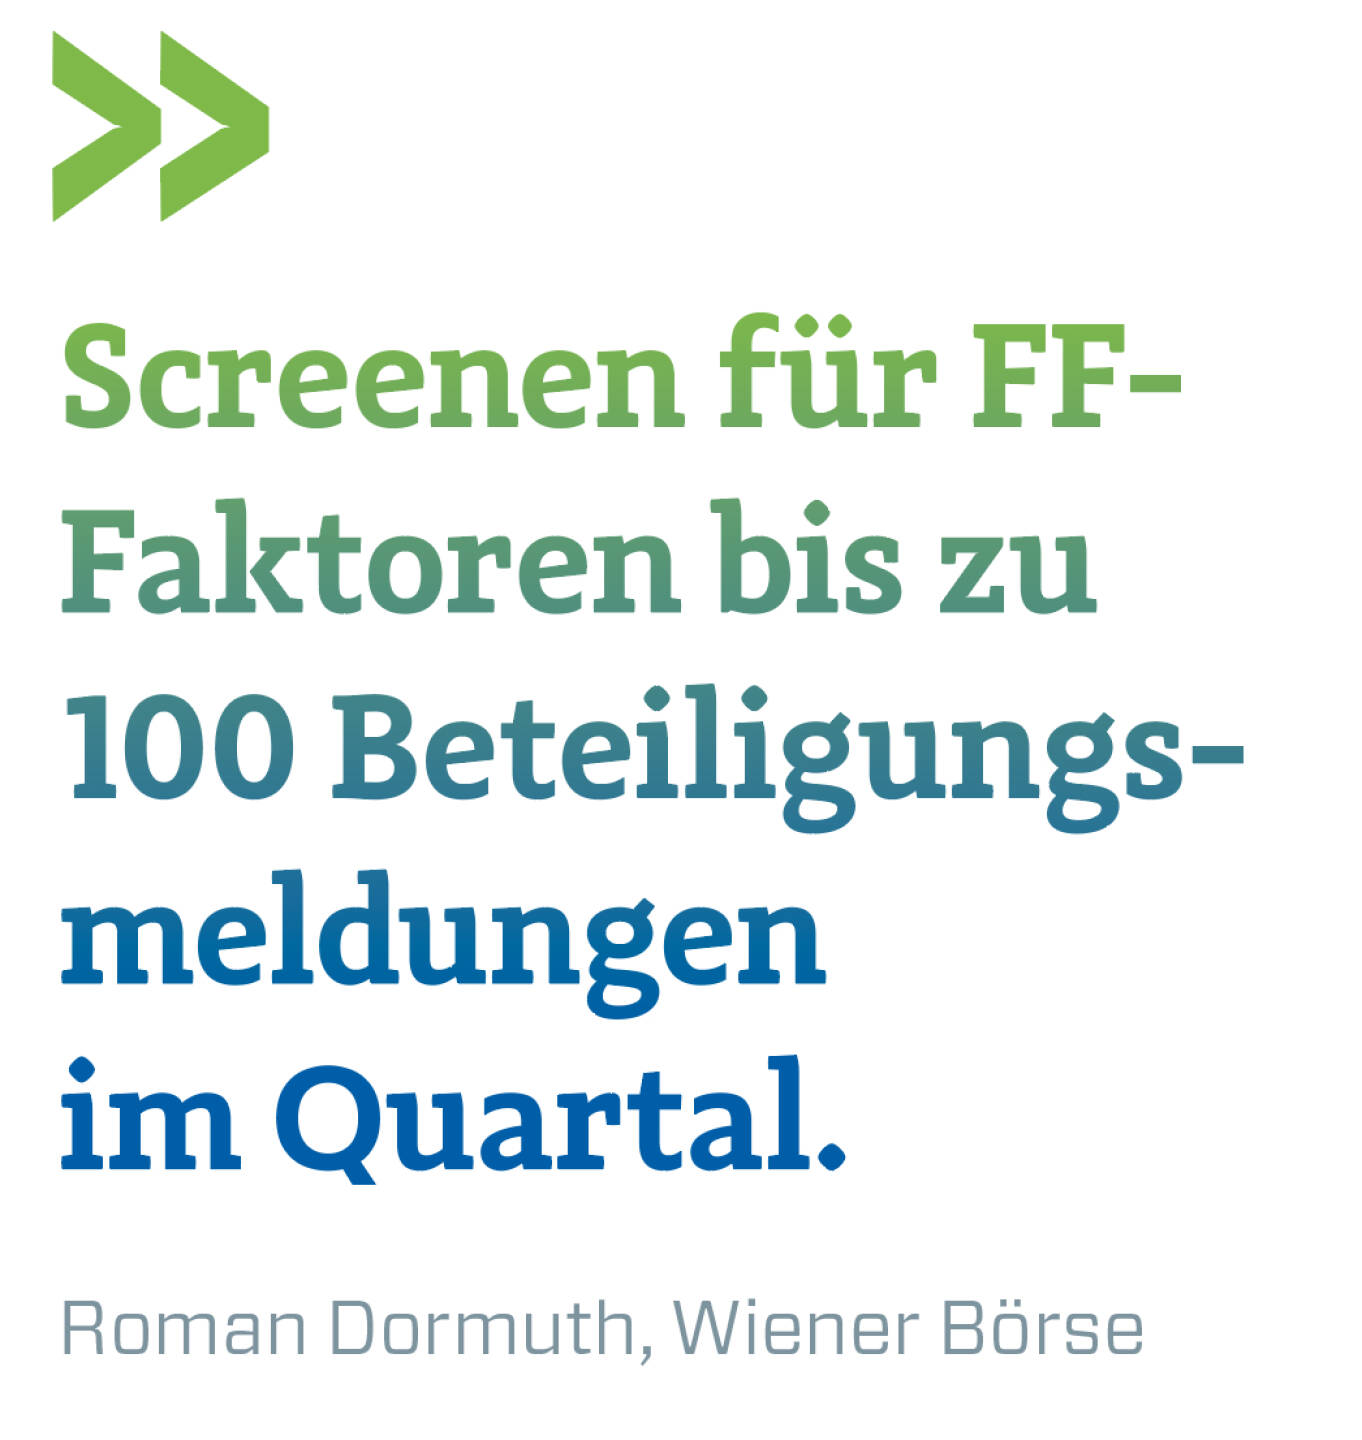 Screenen für FF- Faktoren bis zu 100 Beteiligungs-meldungen im Quartal. 
Roman Dormuth, Wiener Börse